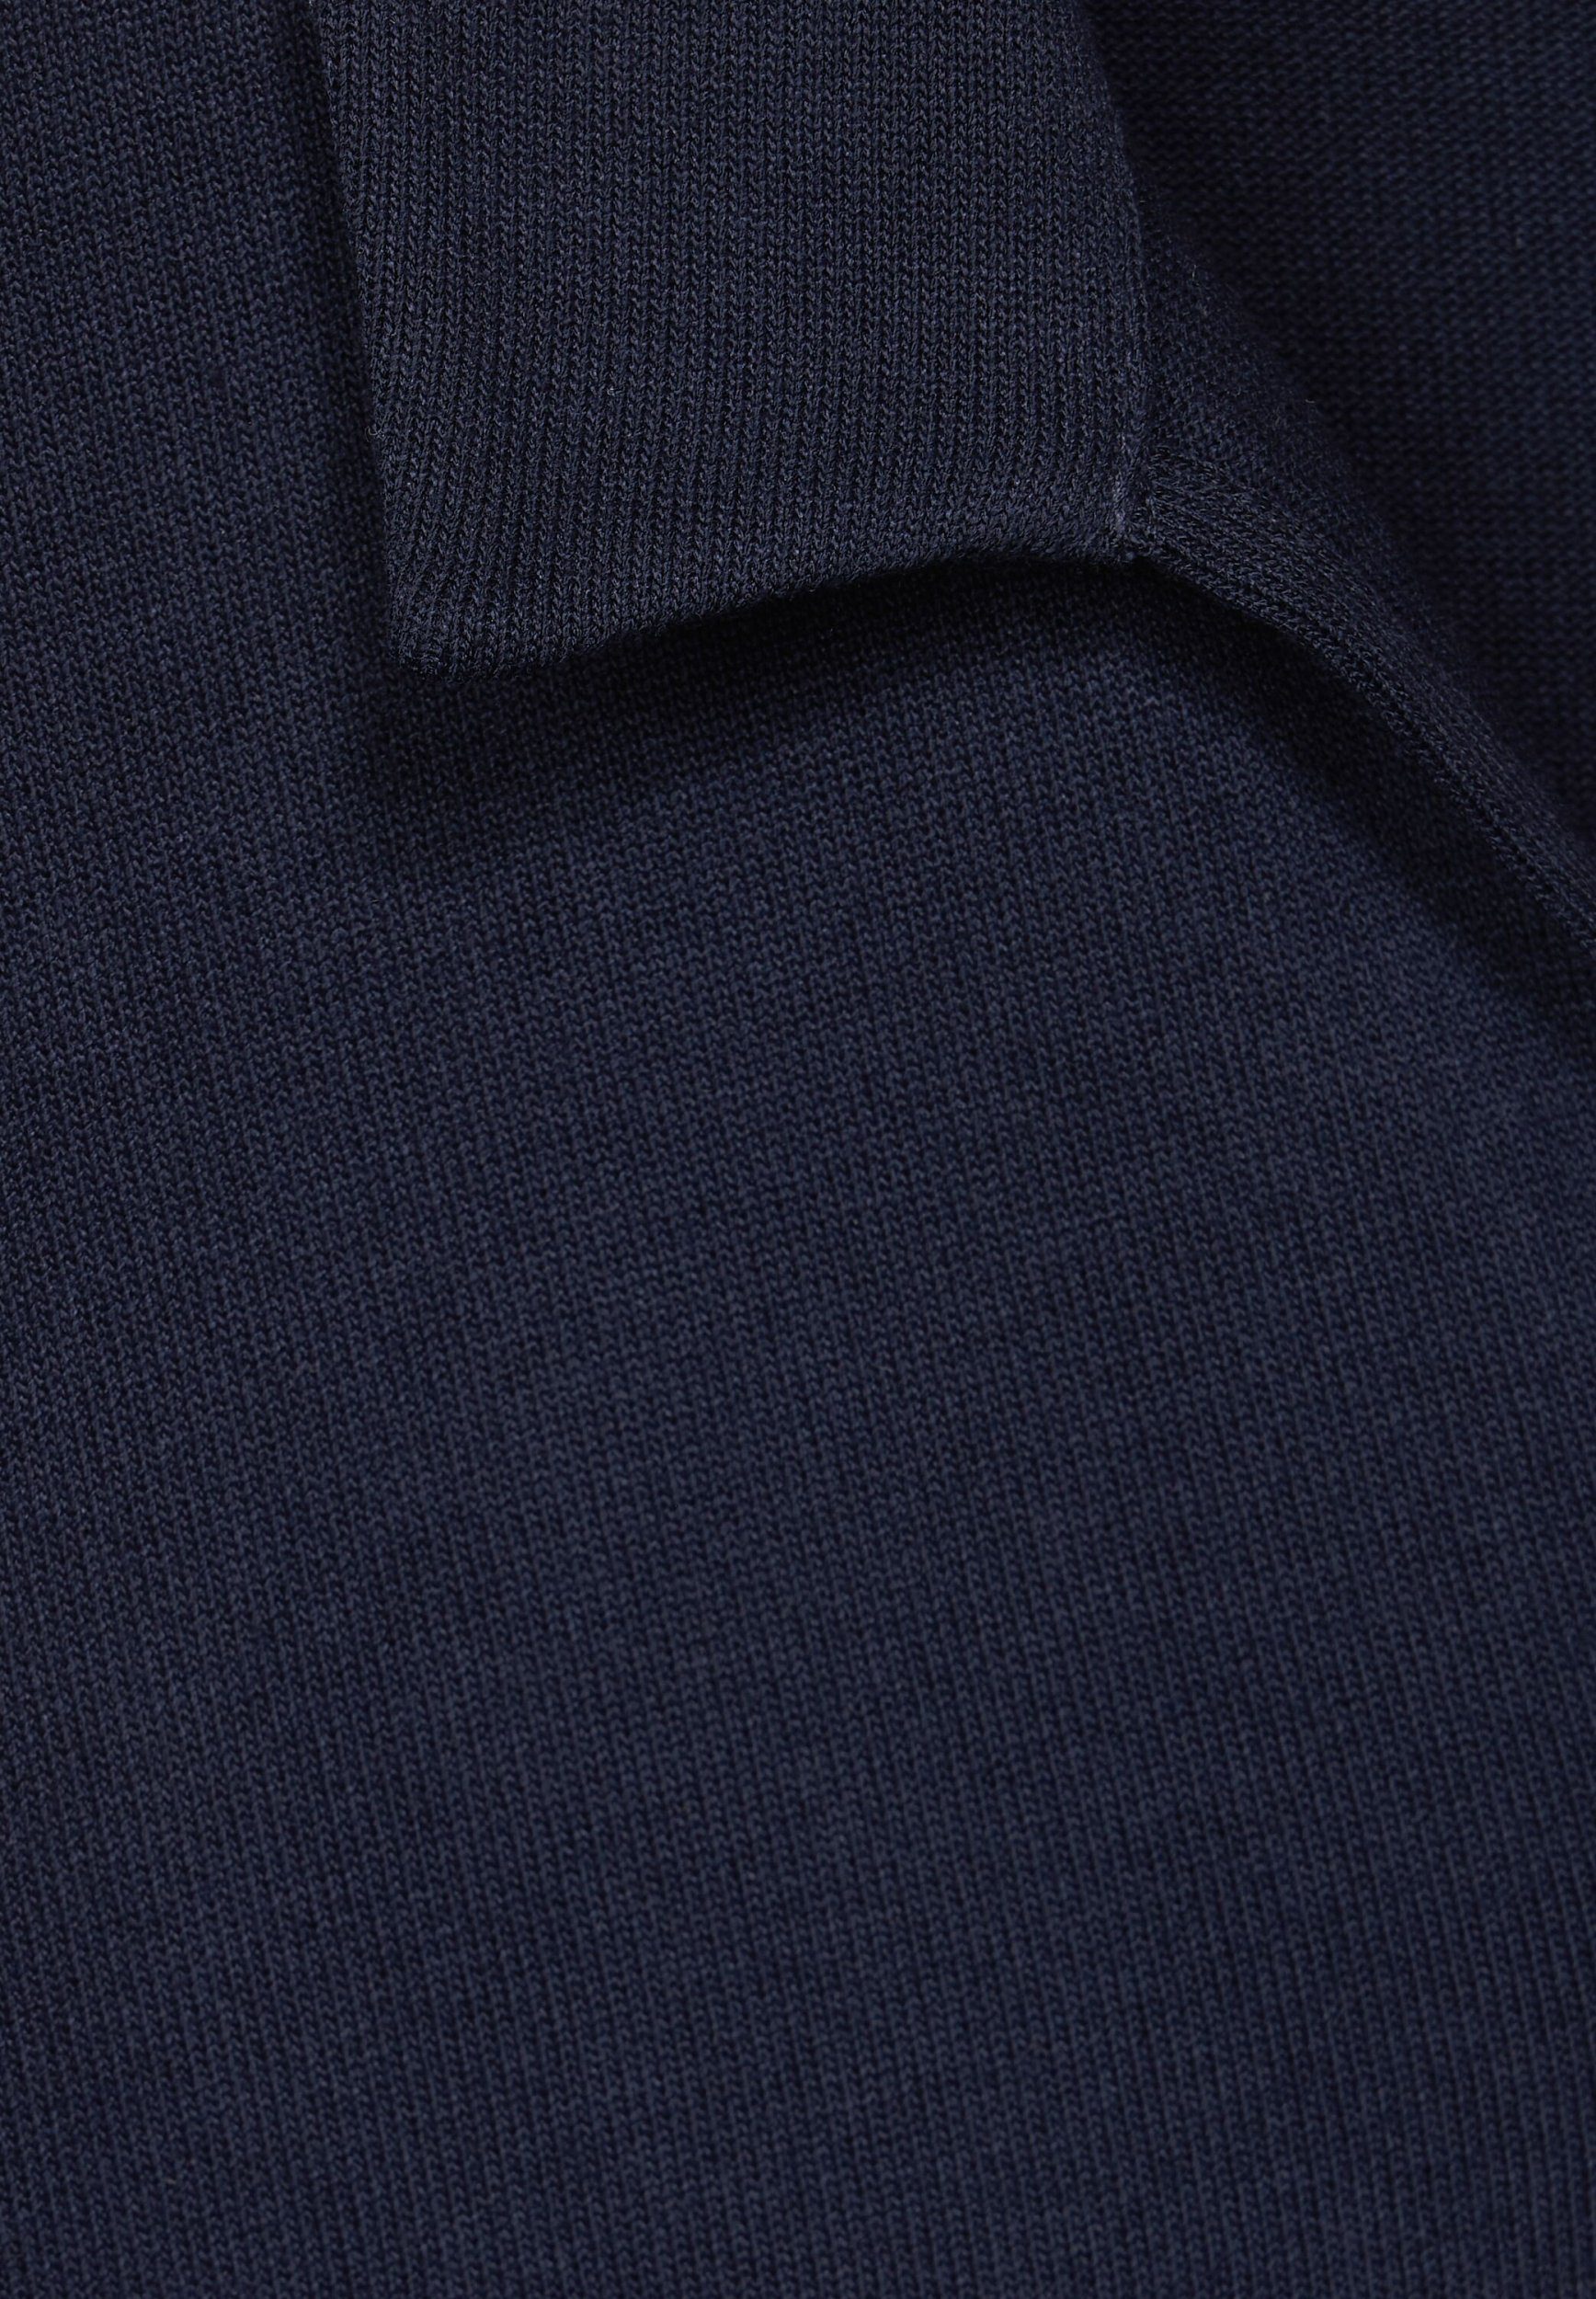 Kurzarmshirt look knit ONE STREET shirt blue polo deep